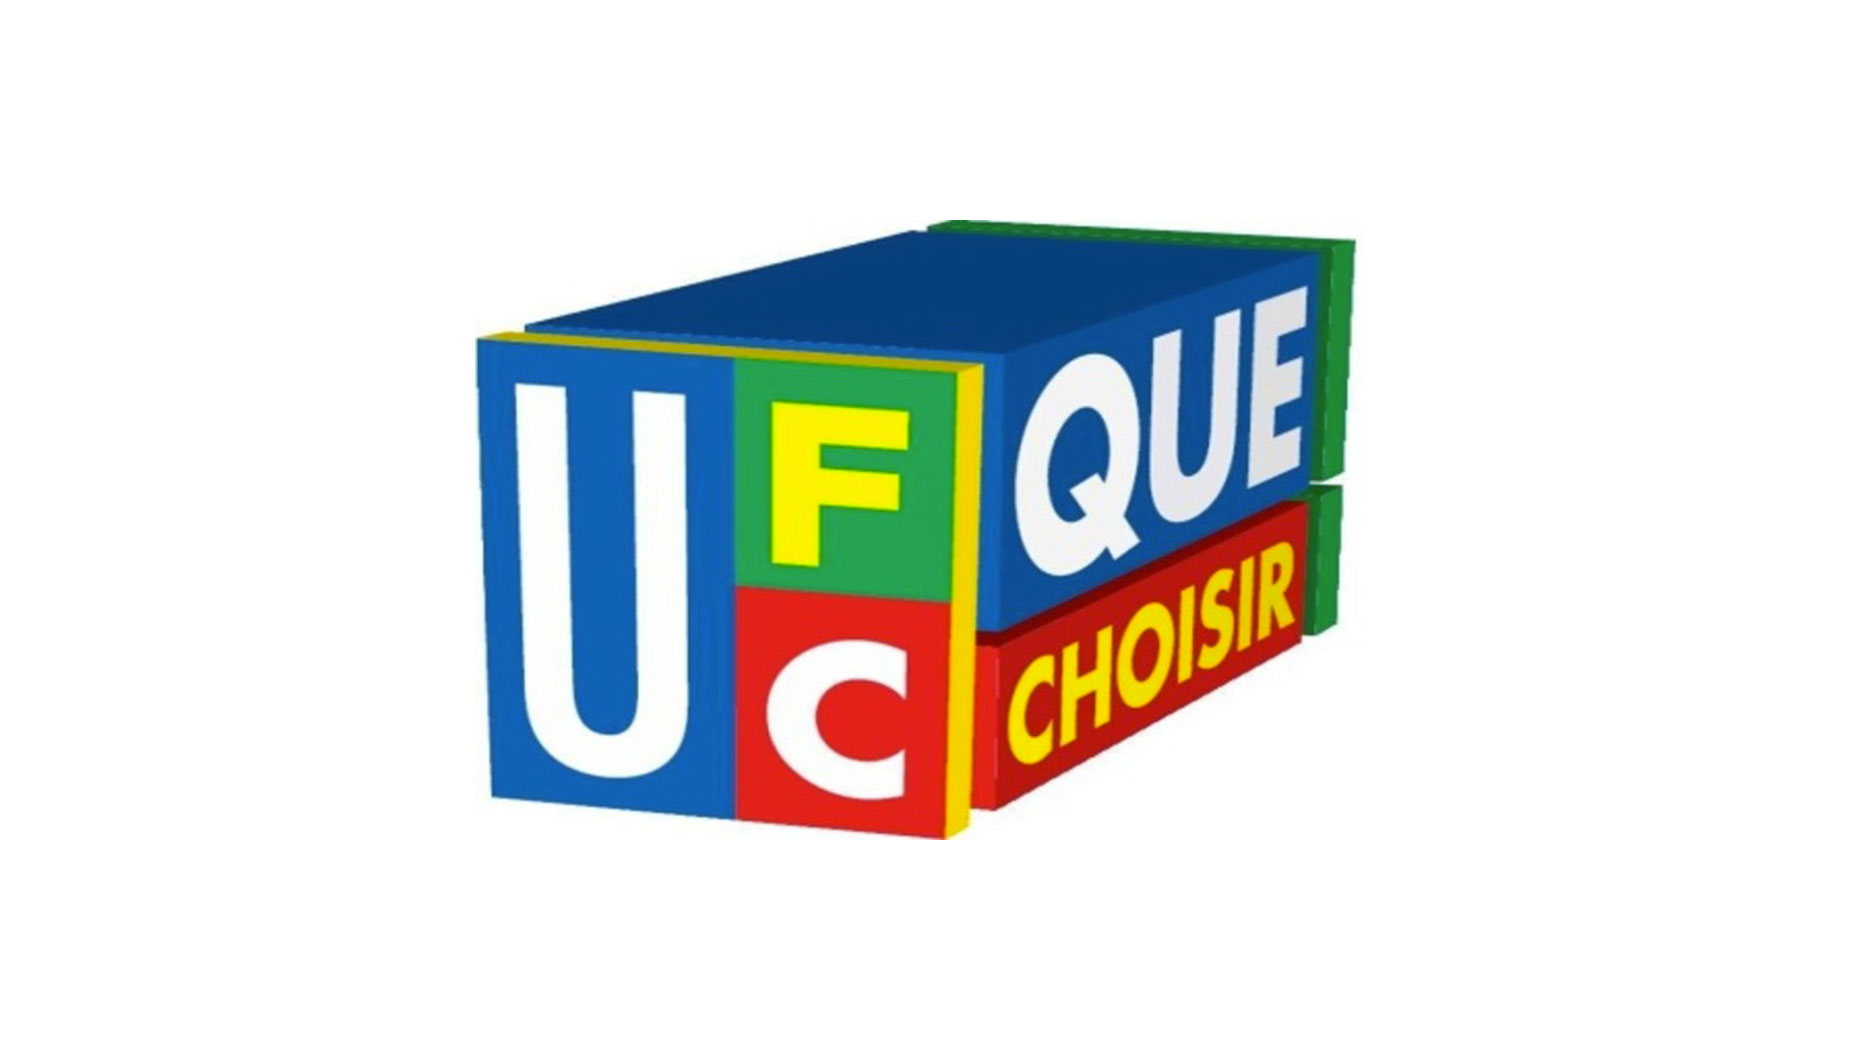 UFC Que-Choisir